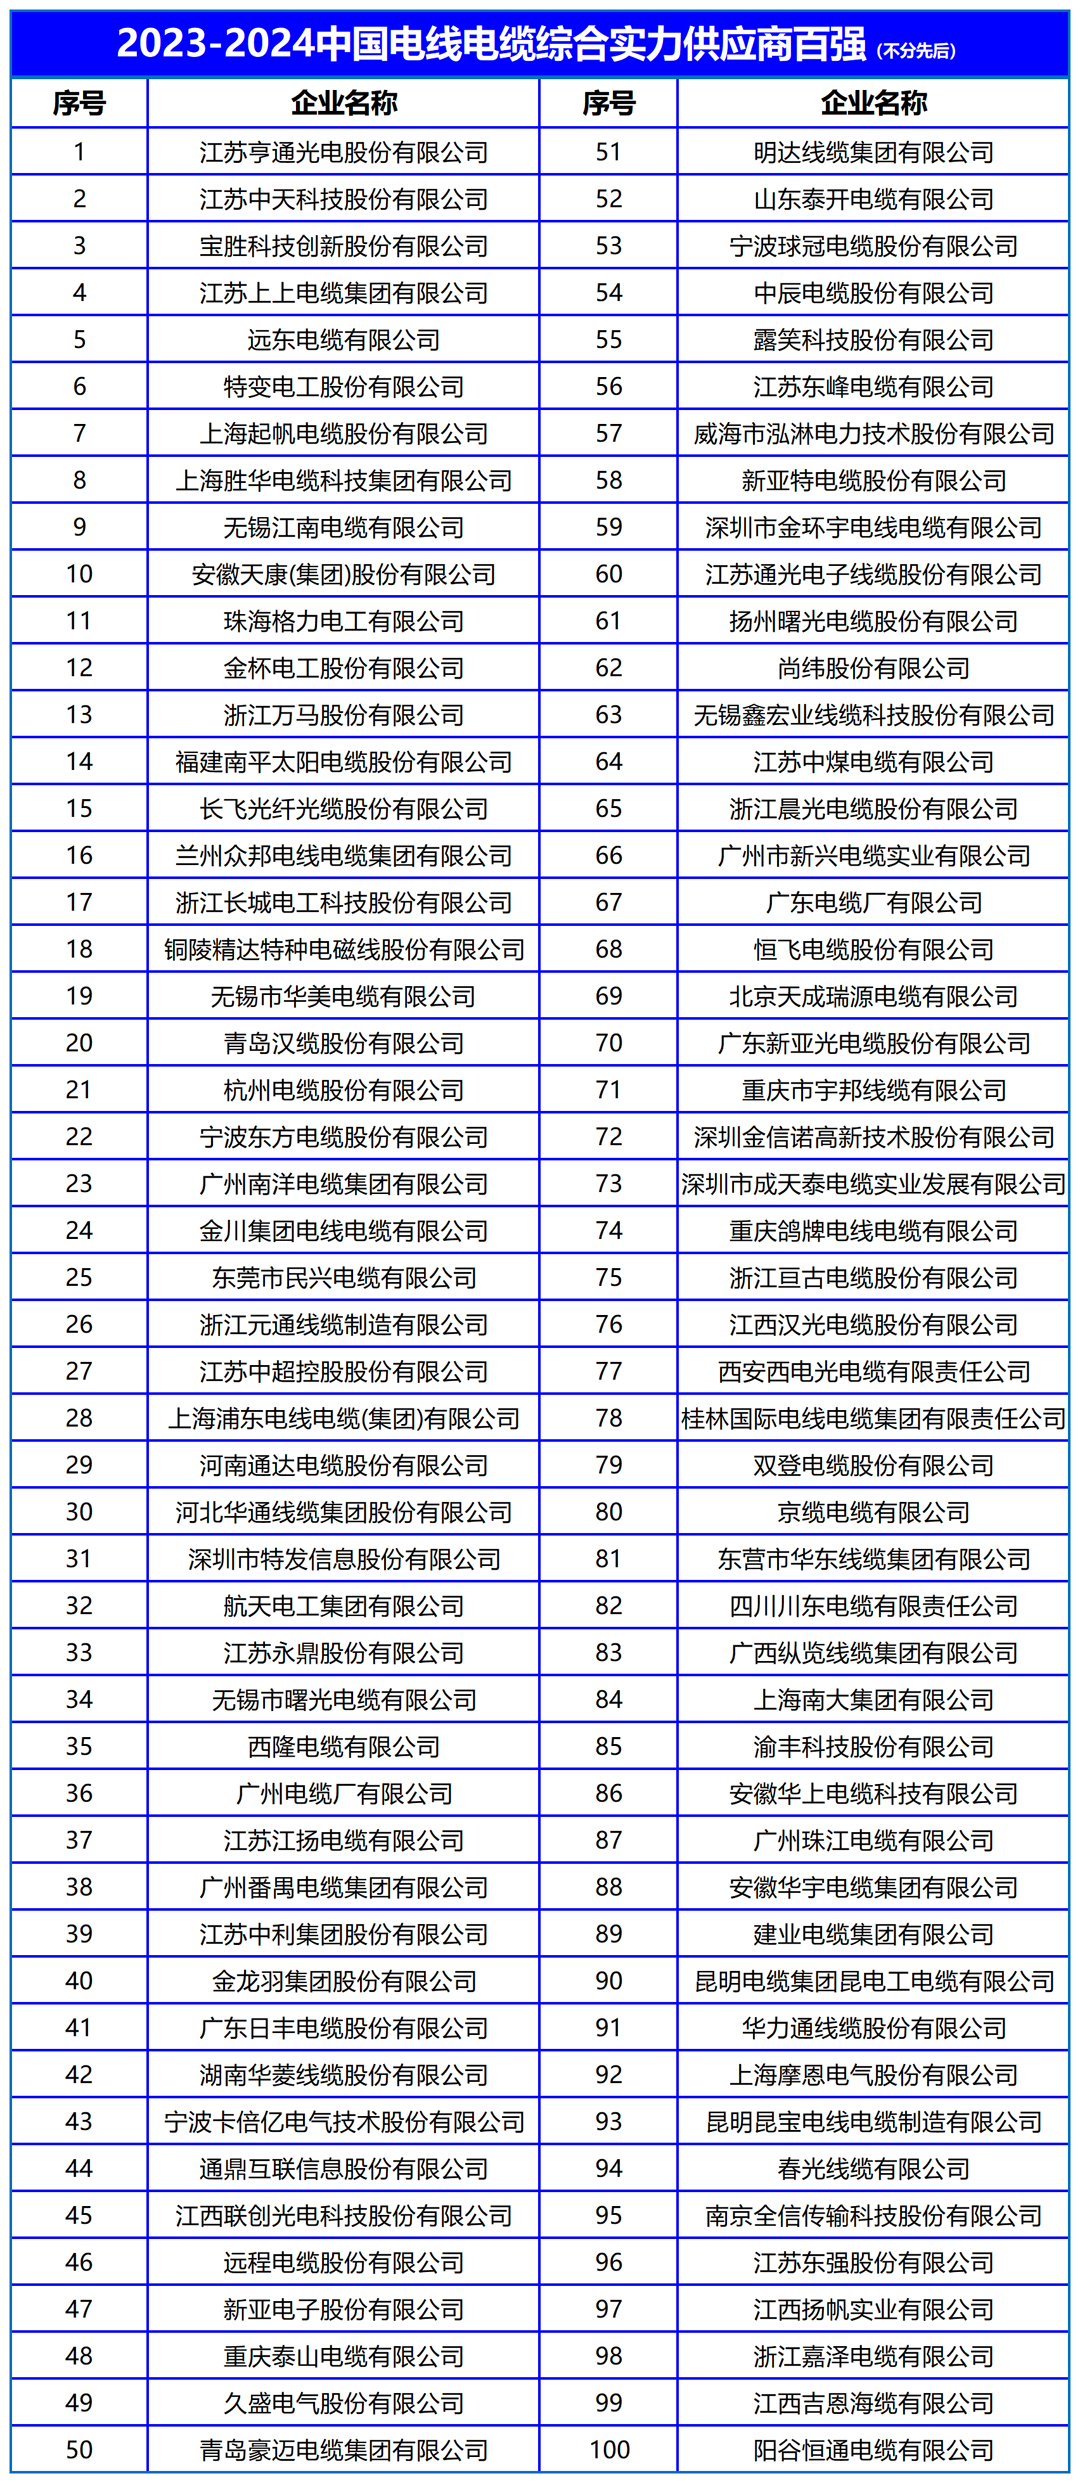 2024电线电缆榜单带编码(1)_Sheet3.png